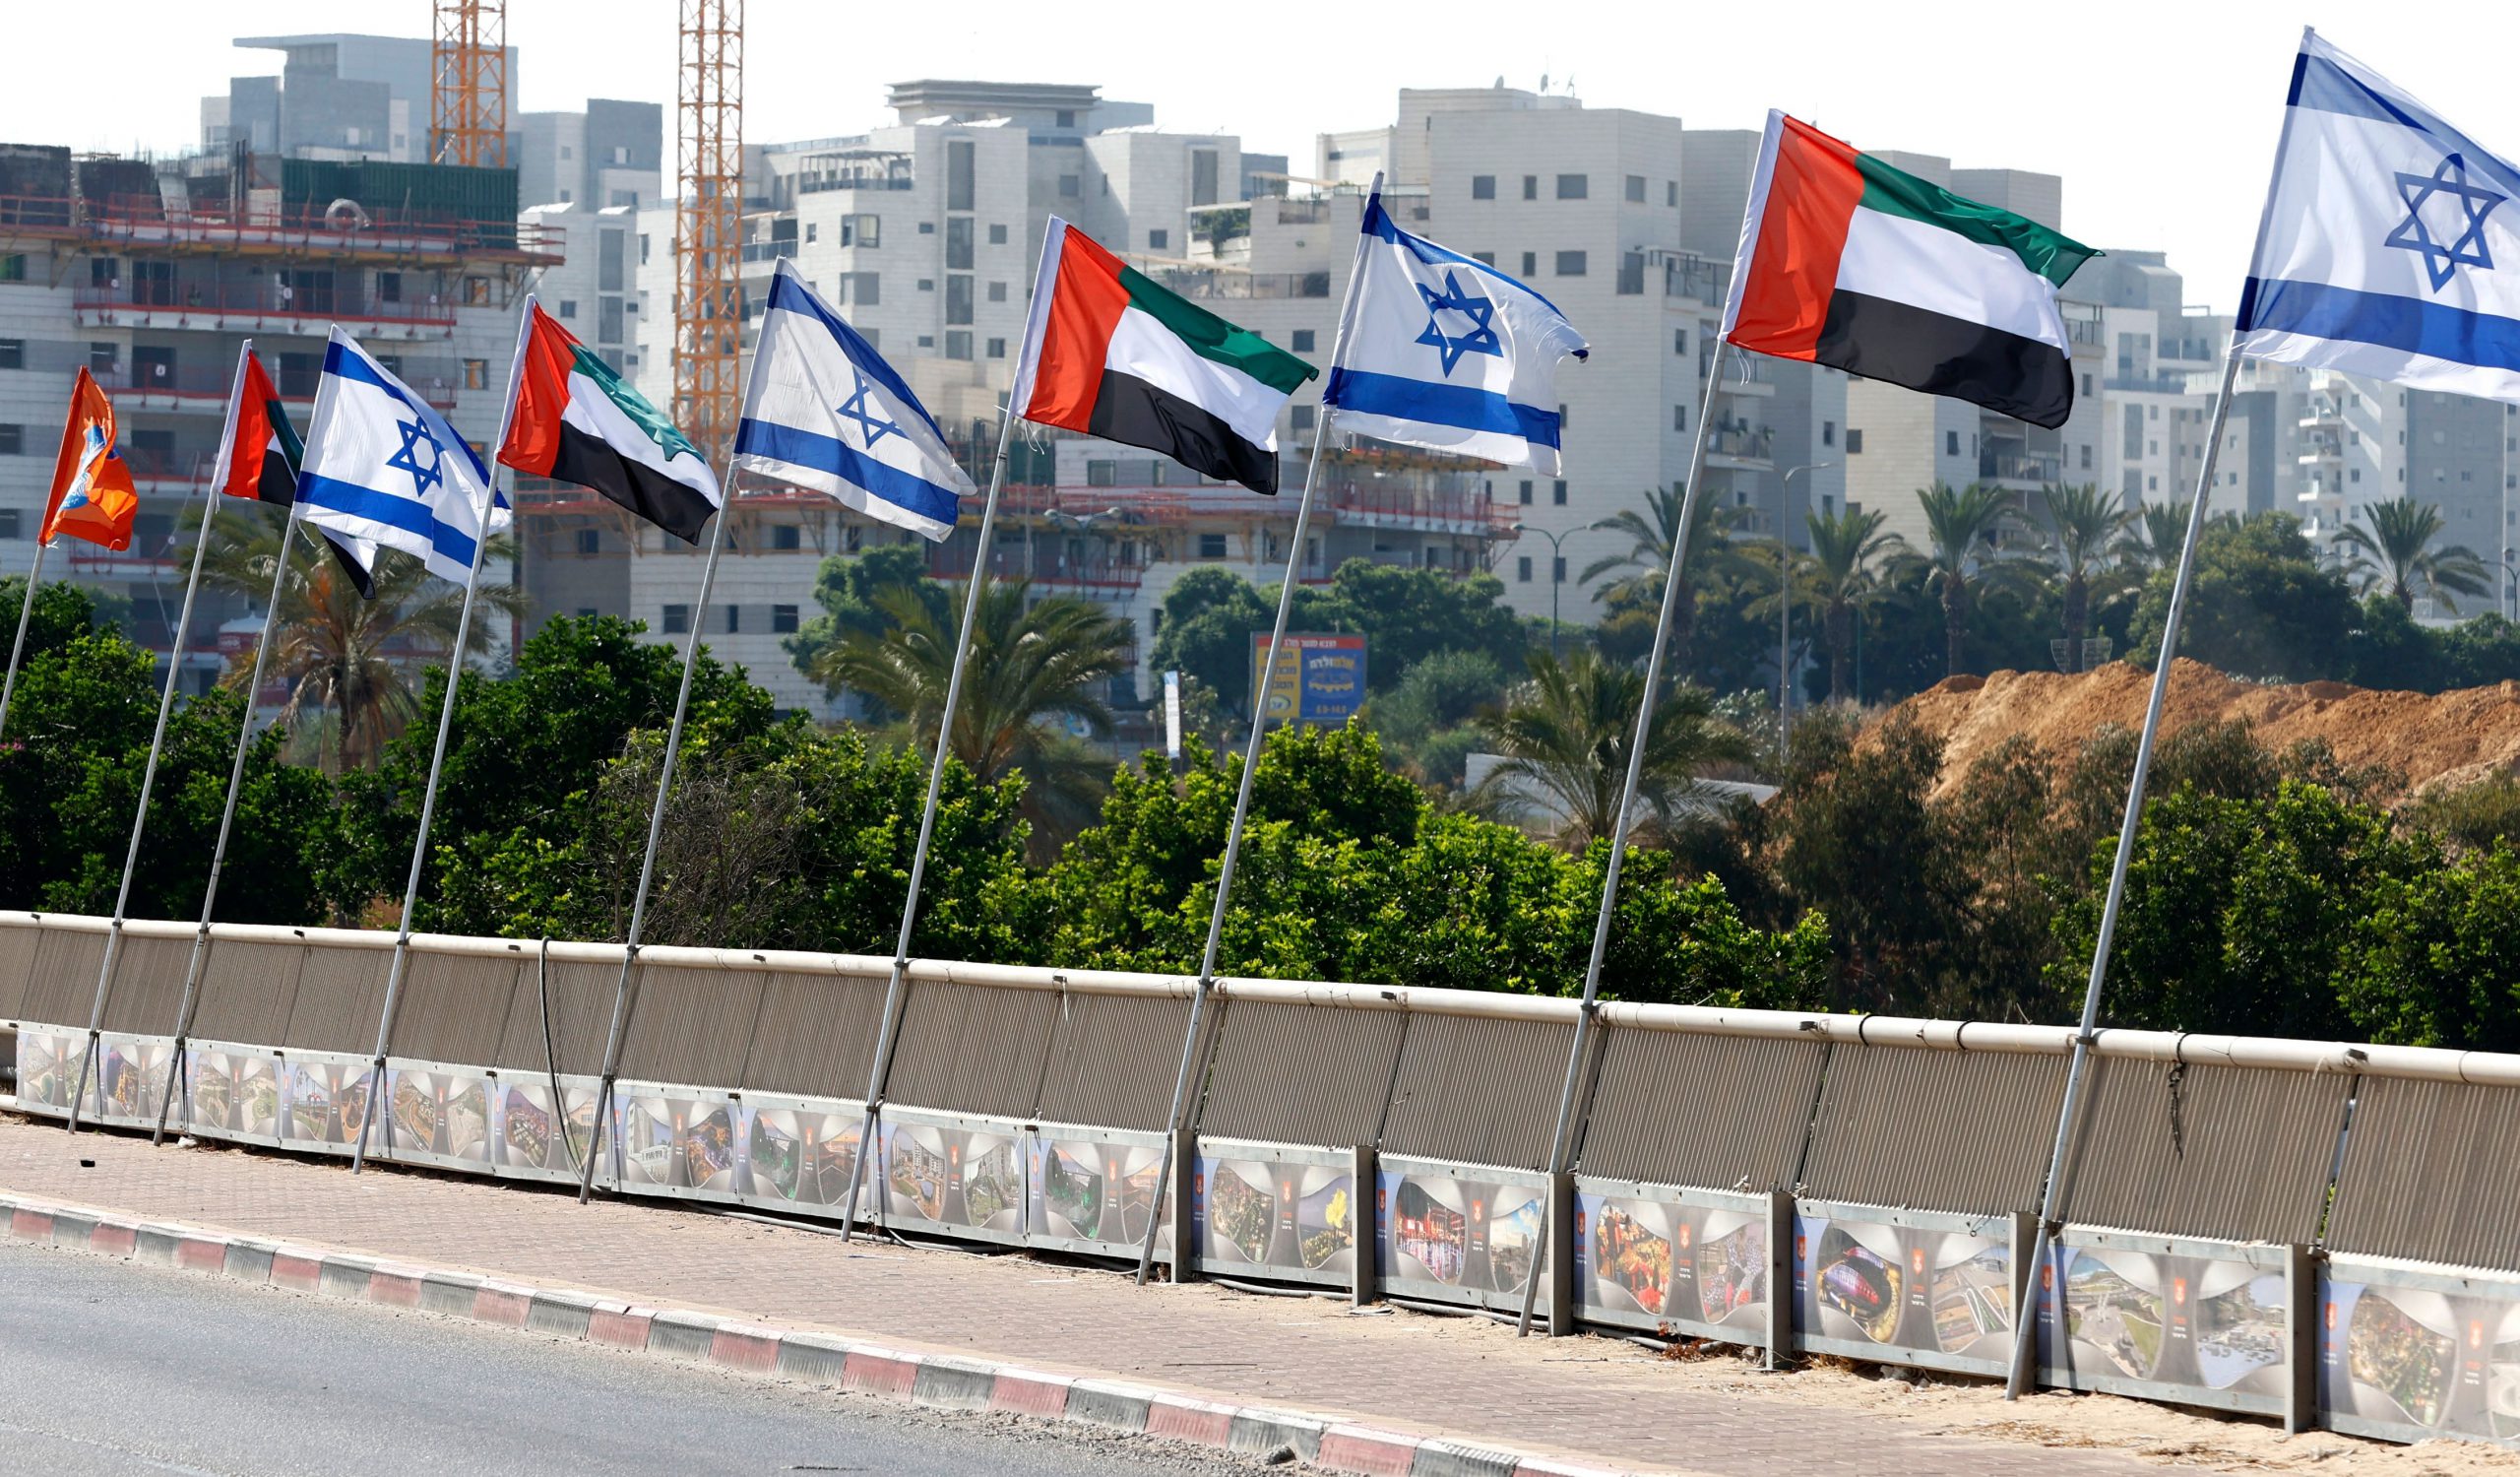 التعاون الإماراتي والکیان الصهیوني للتجسس المعلوماتي وراء انعدام الأمن في المنطقة